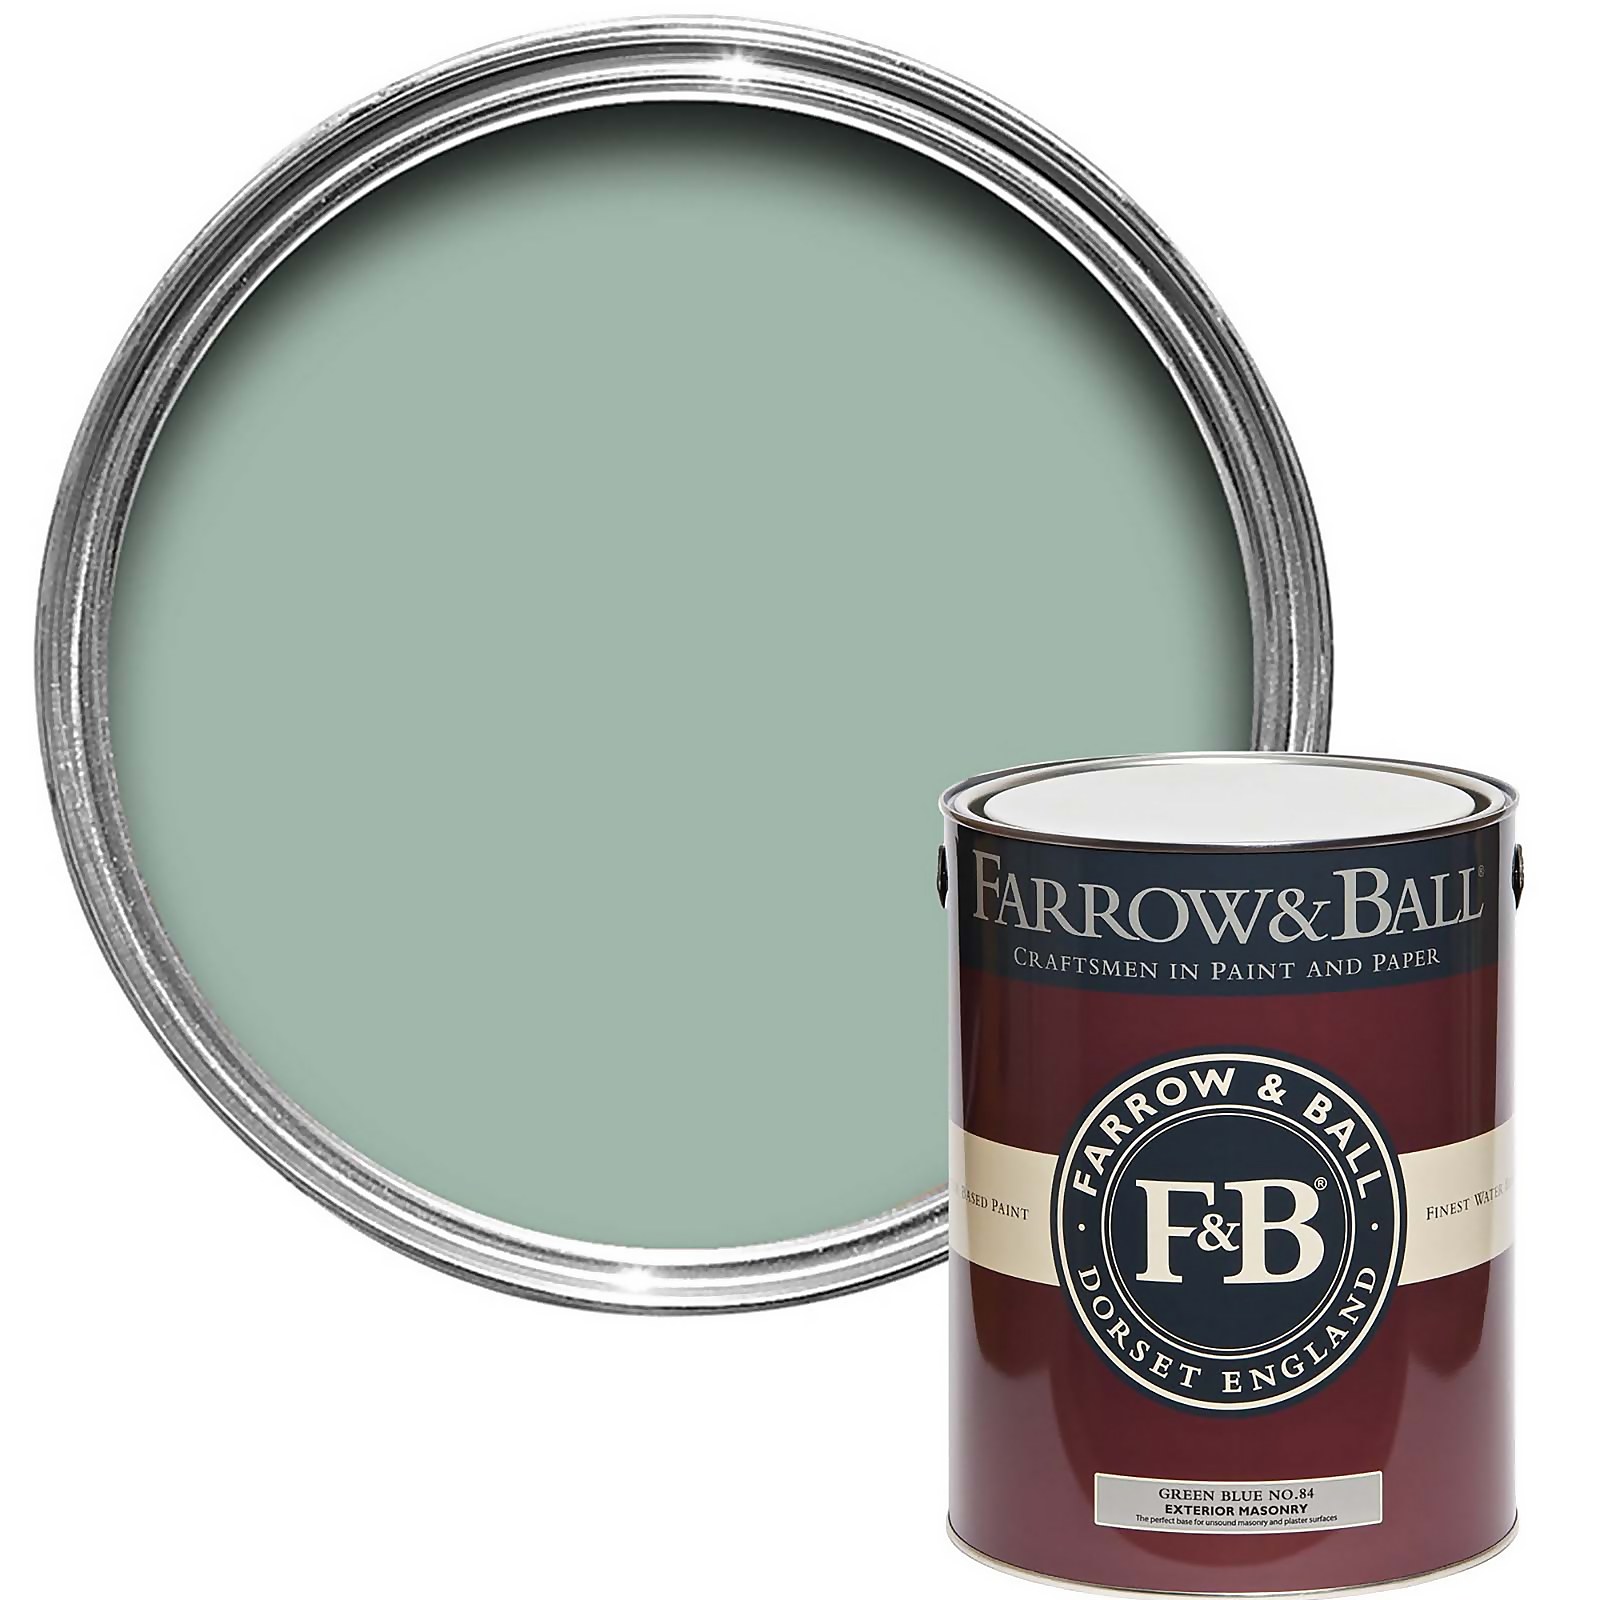 Farrow & Ball Exterior Masonry Paint Green Blue No.84  - 5L